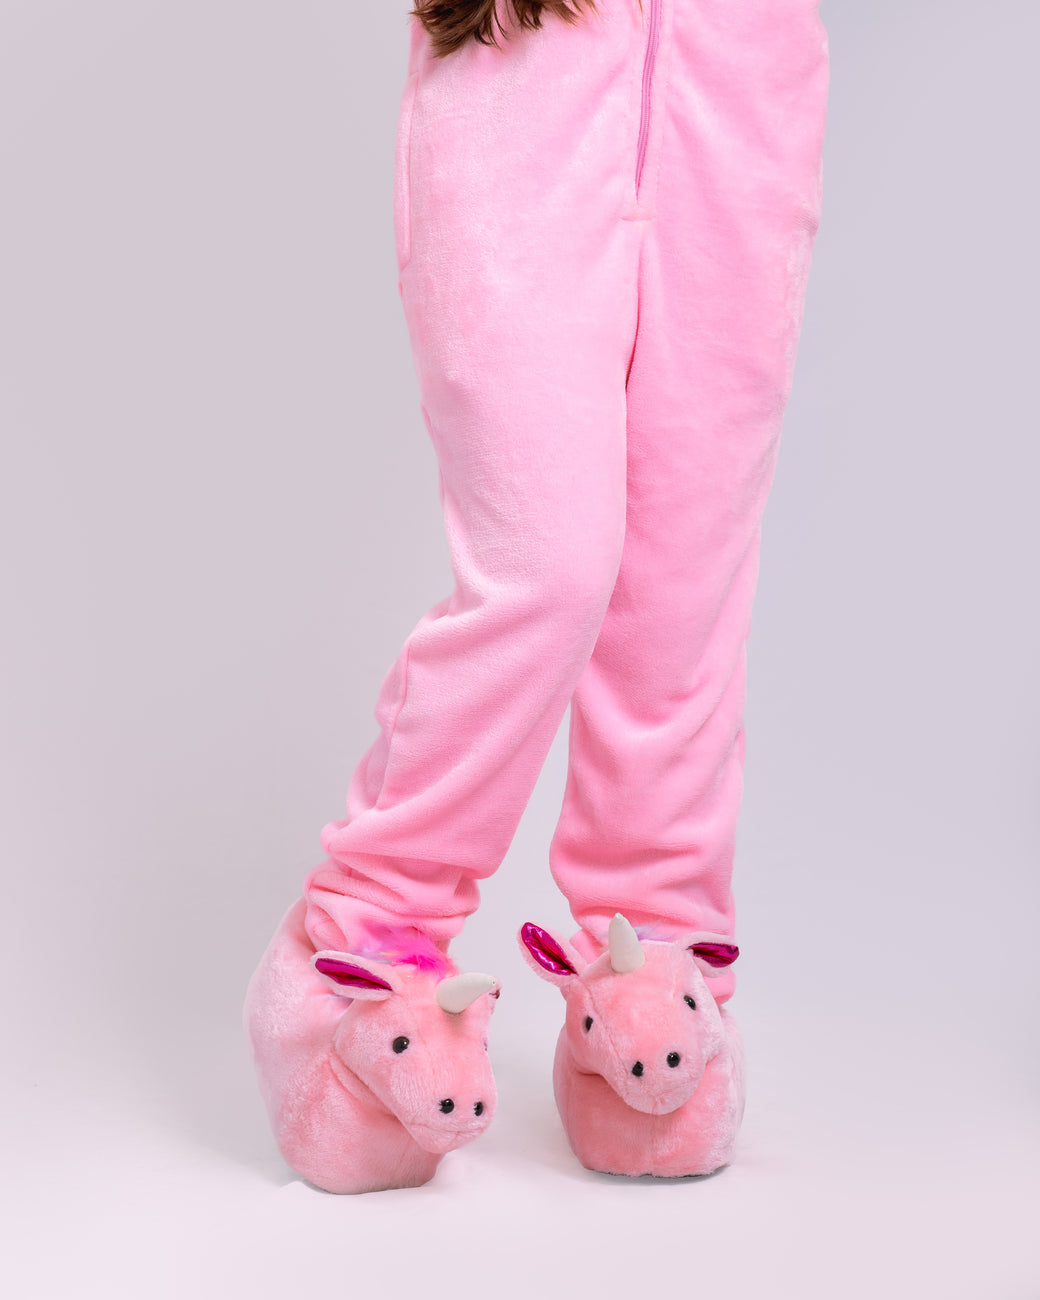 Pijama temática Unicornio rosado